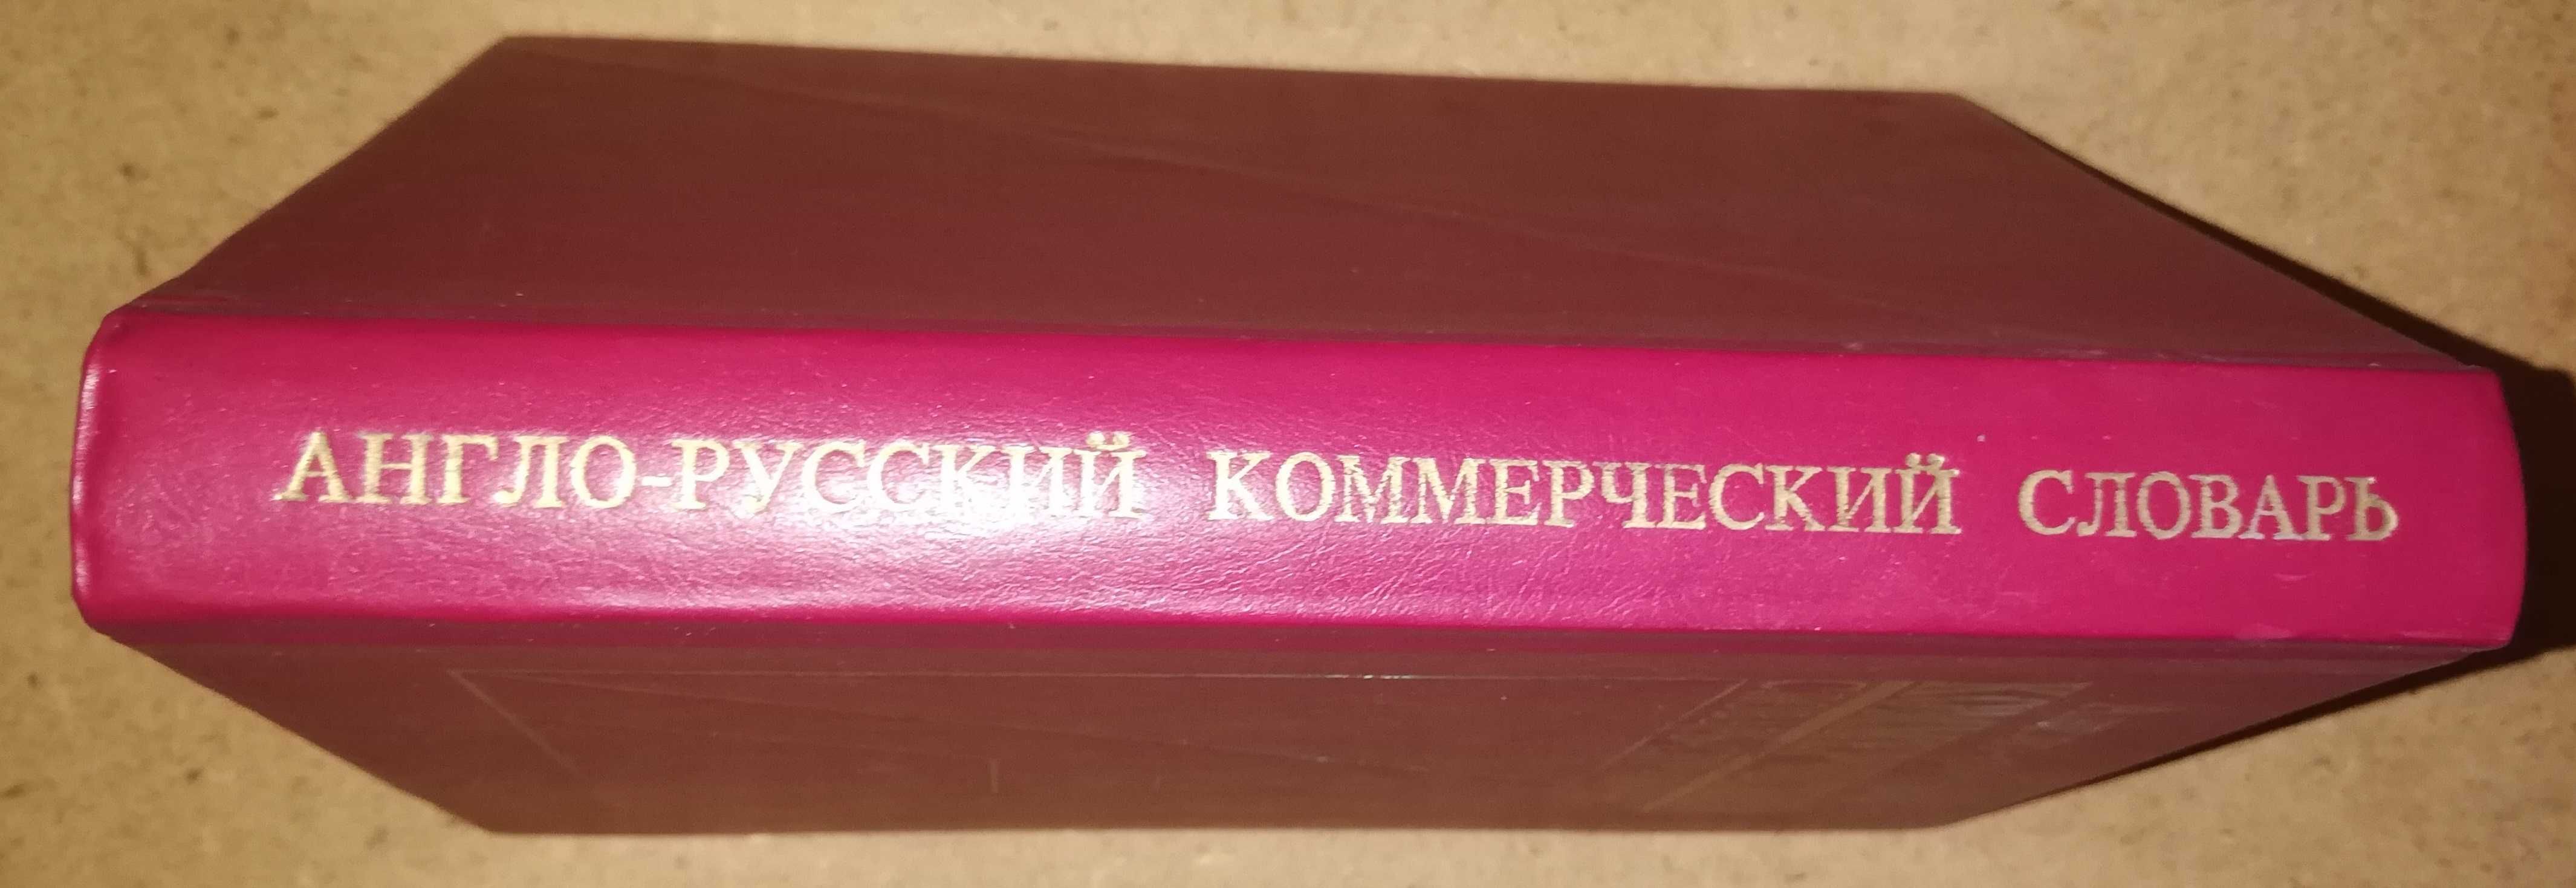 Англо-Русский Коммерческий словарь